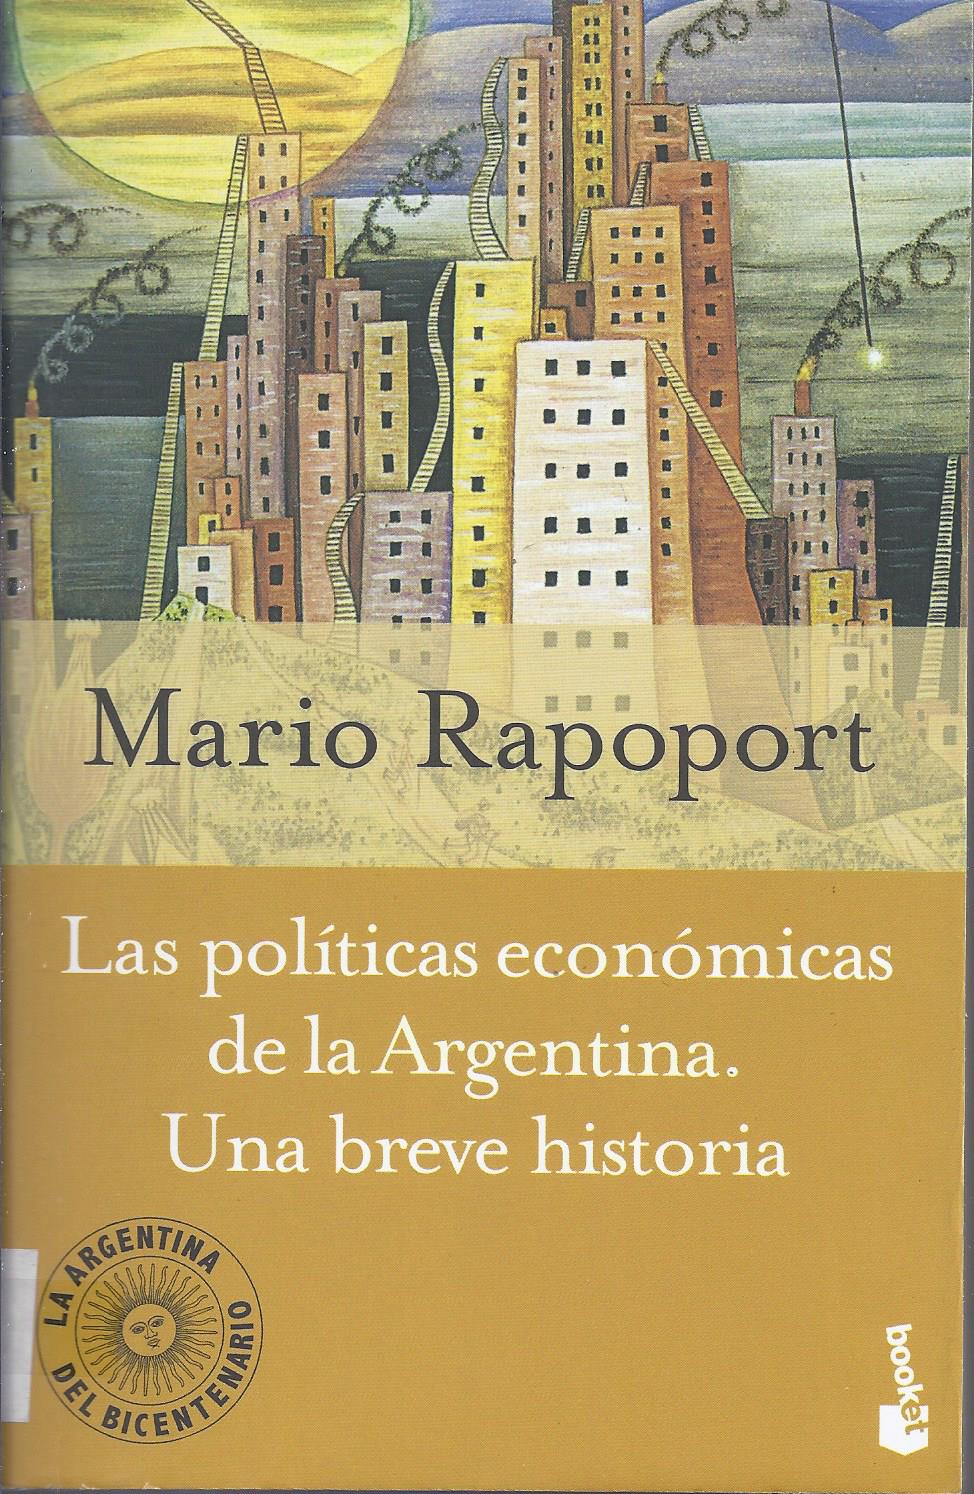 Las políticas económicas de la Argentina. Una breve historia